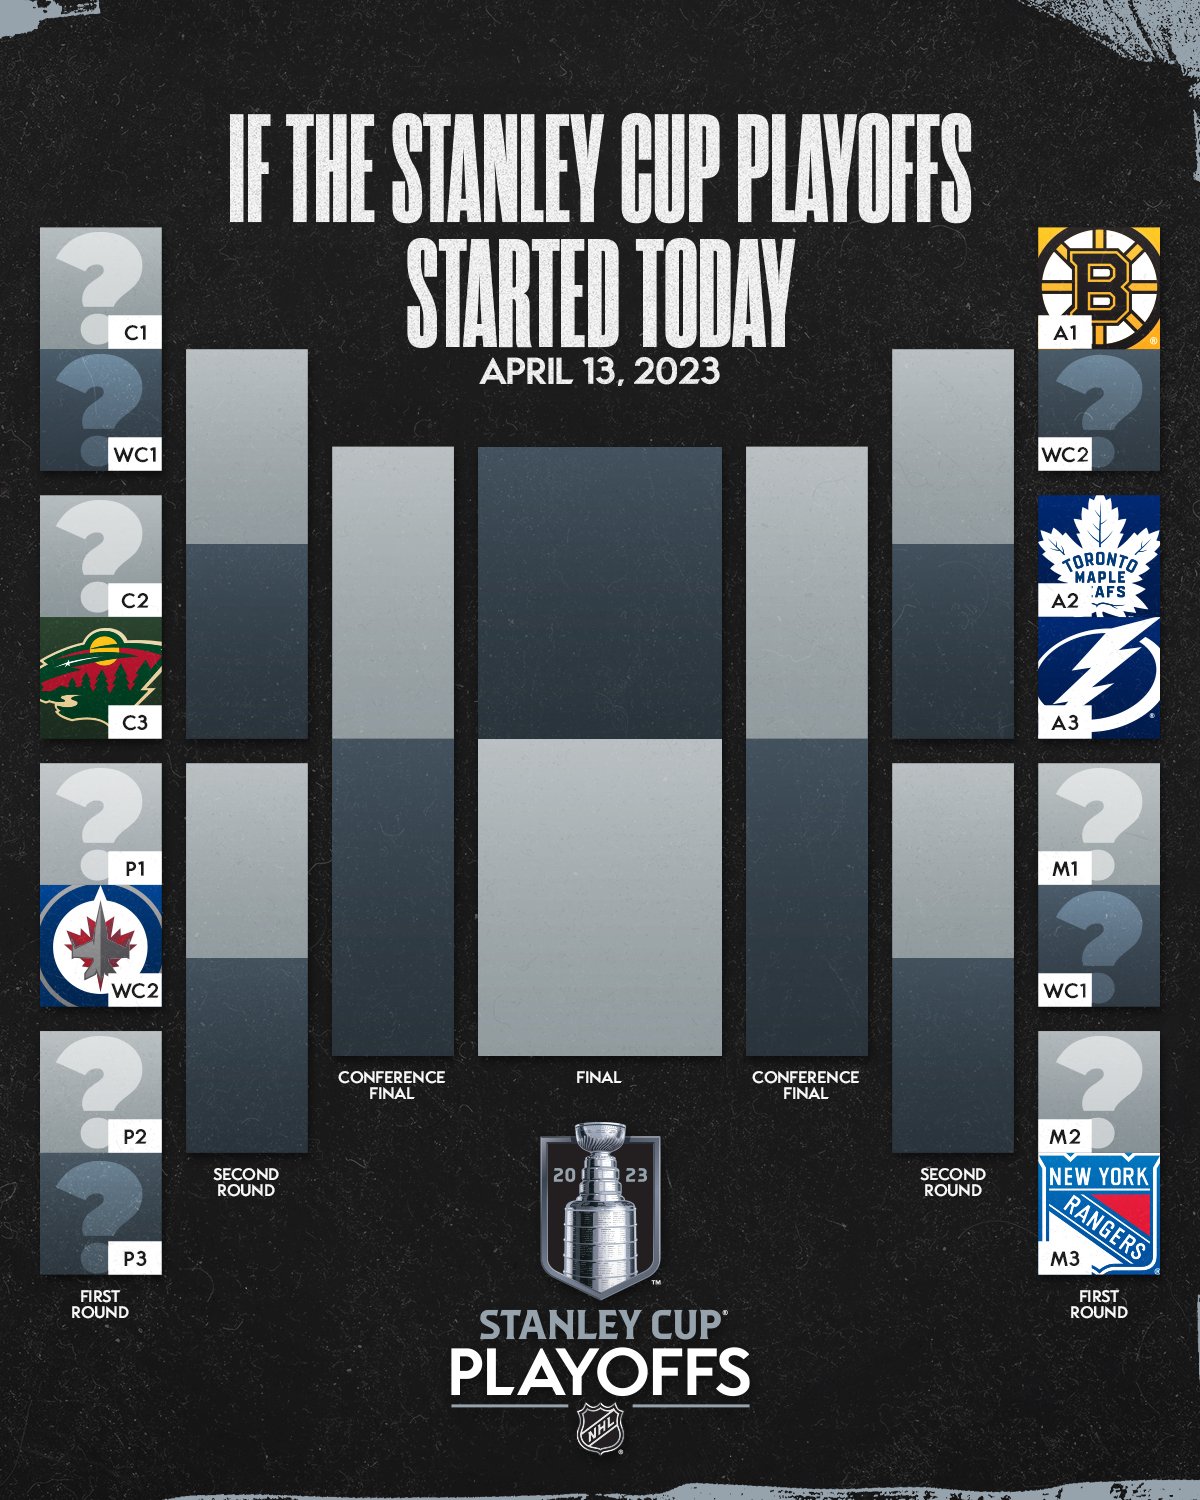 Нхл сетка плей офф 2023. Сетка плей офф НХЛ 2023. NHL playoff 2023 сетка. Плей офф НХЛ 18/19 сетка. Сетка плей офф КХЛ 2023.